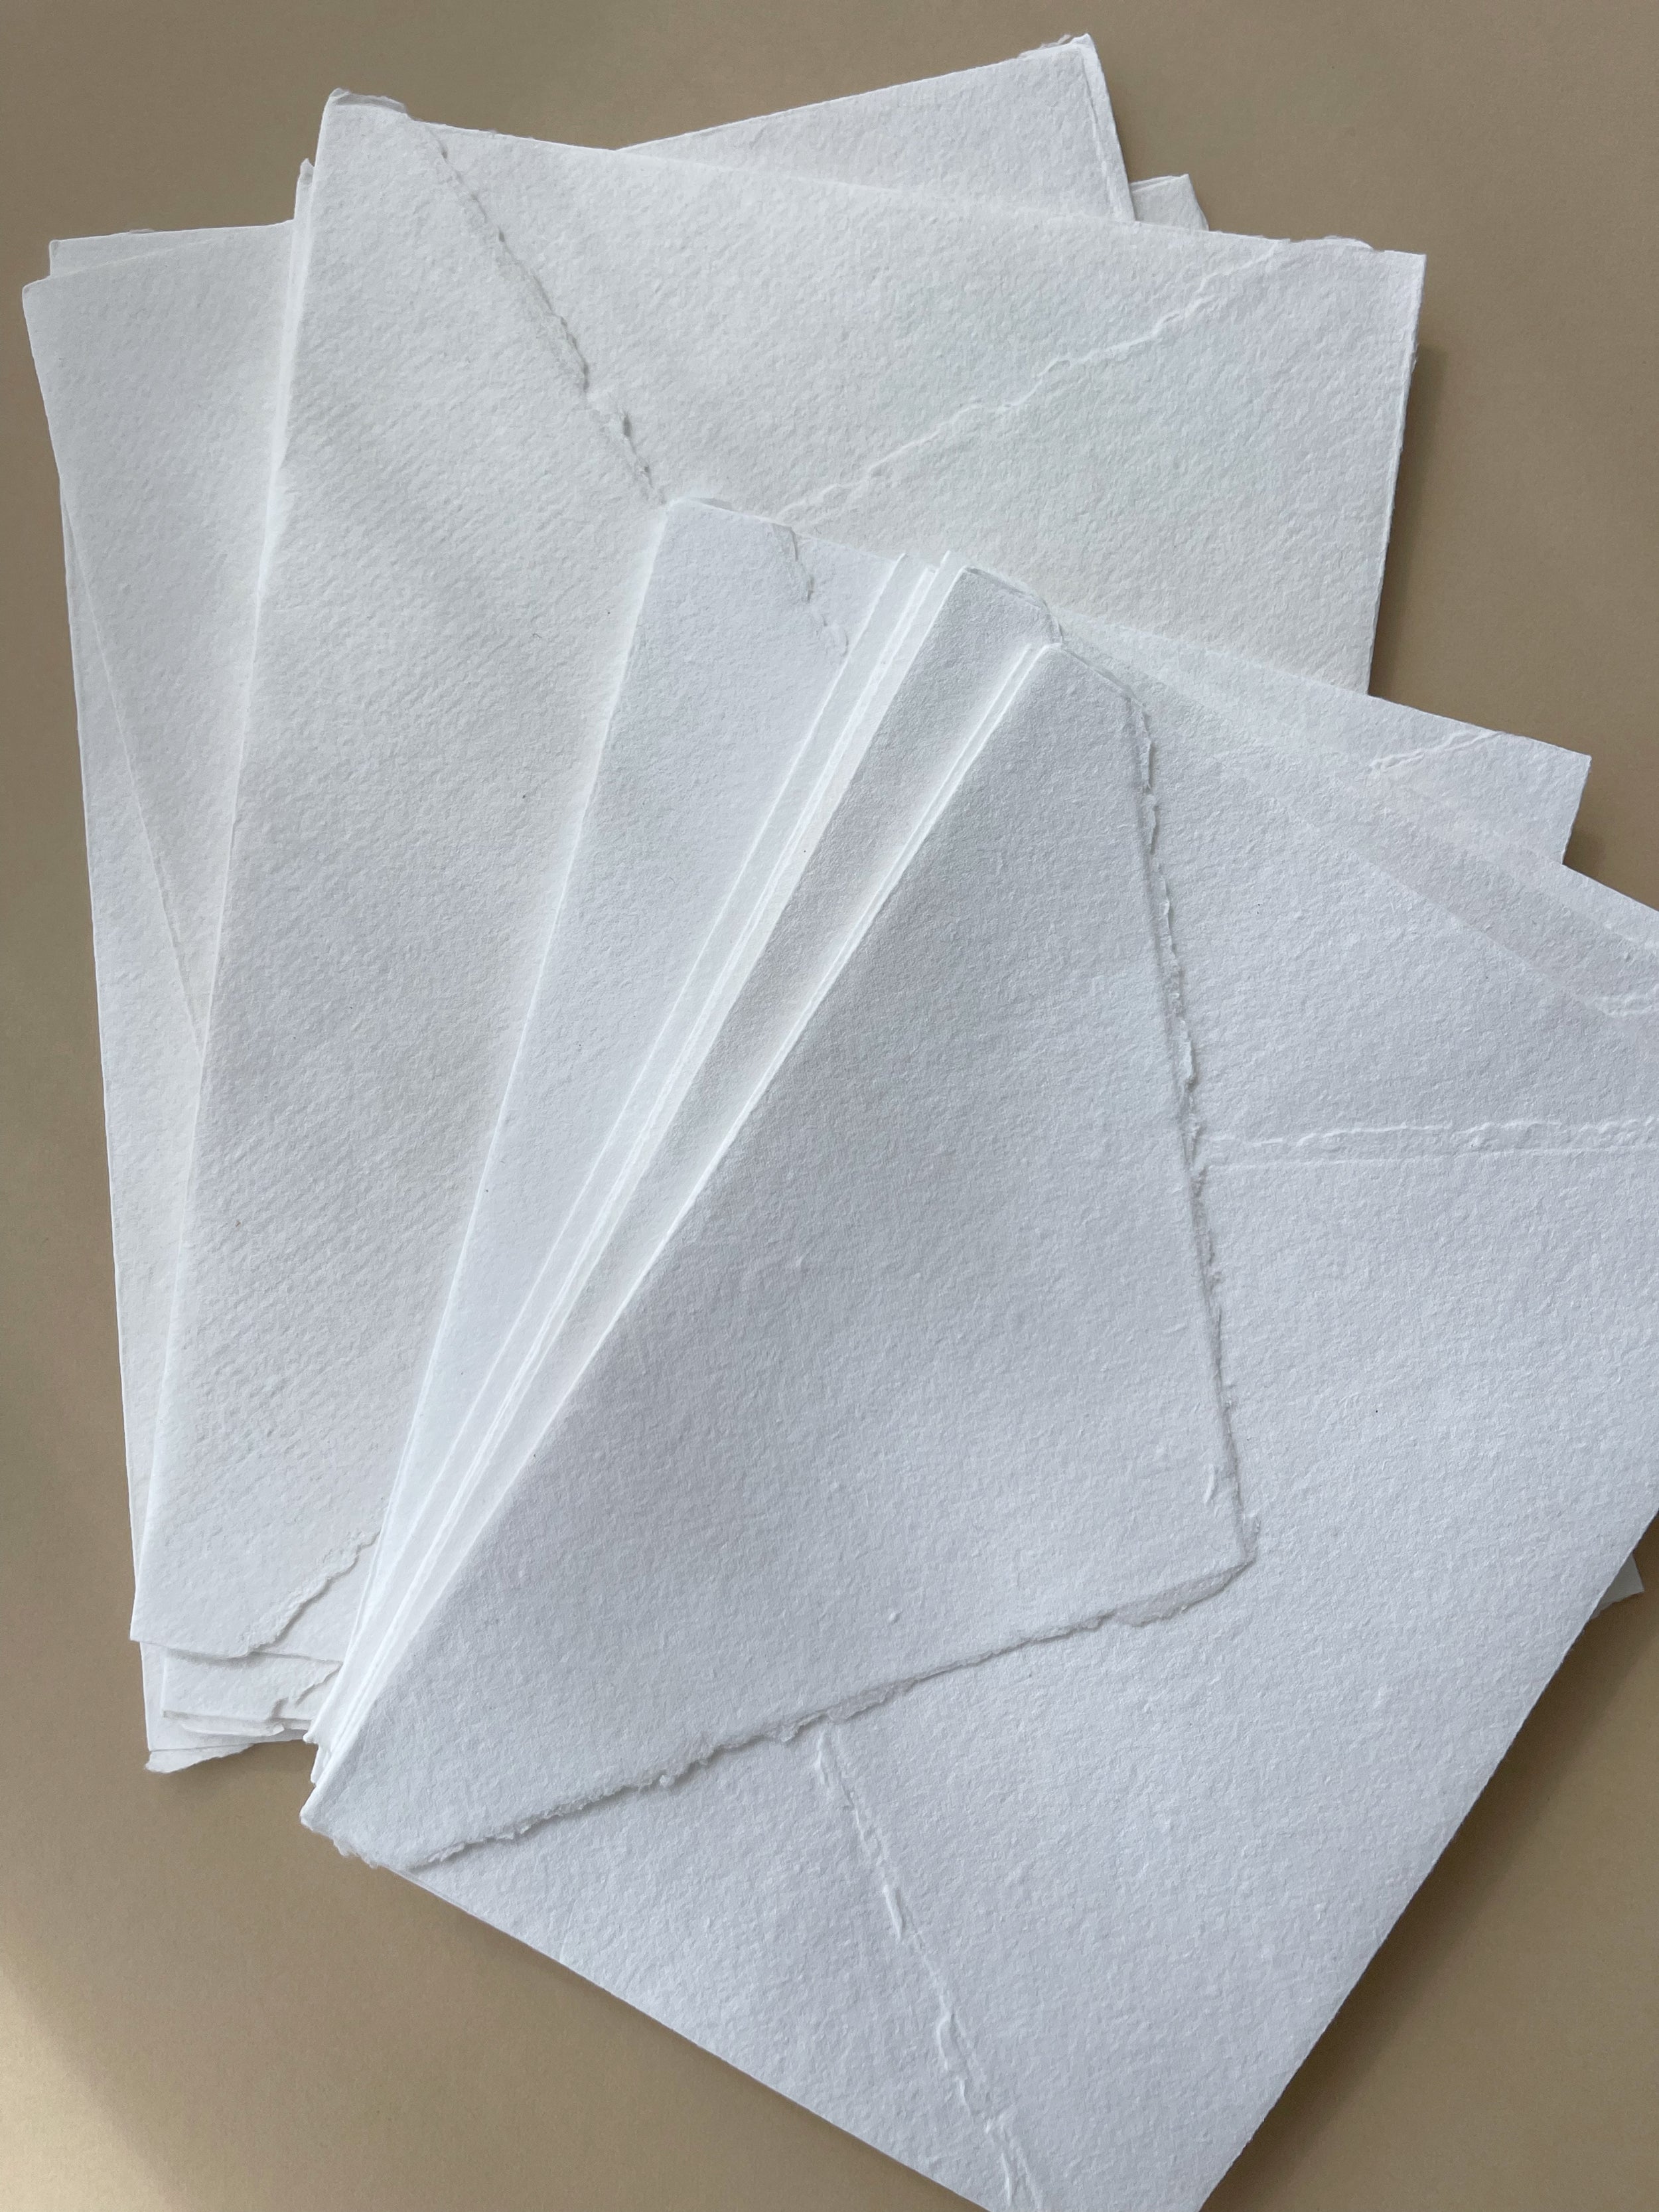 White Deckle Edge Cotton Rag Envelopes